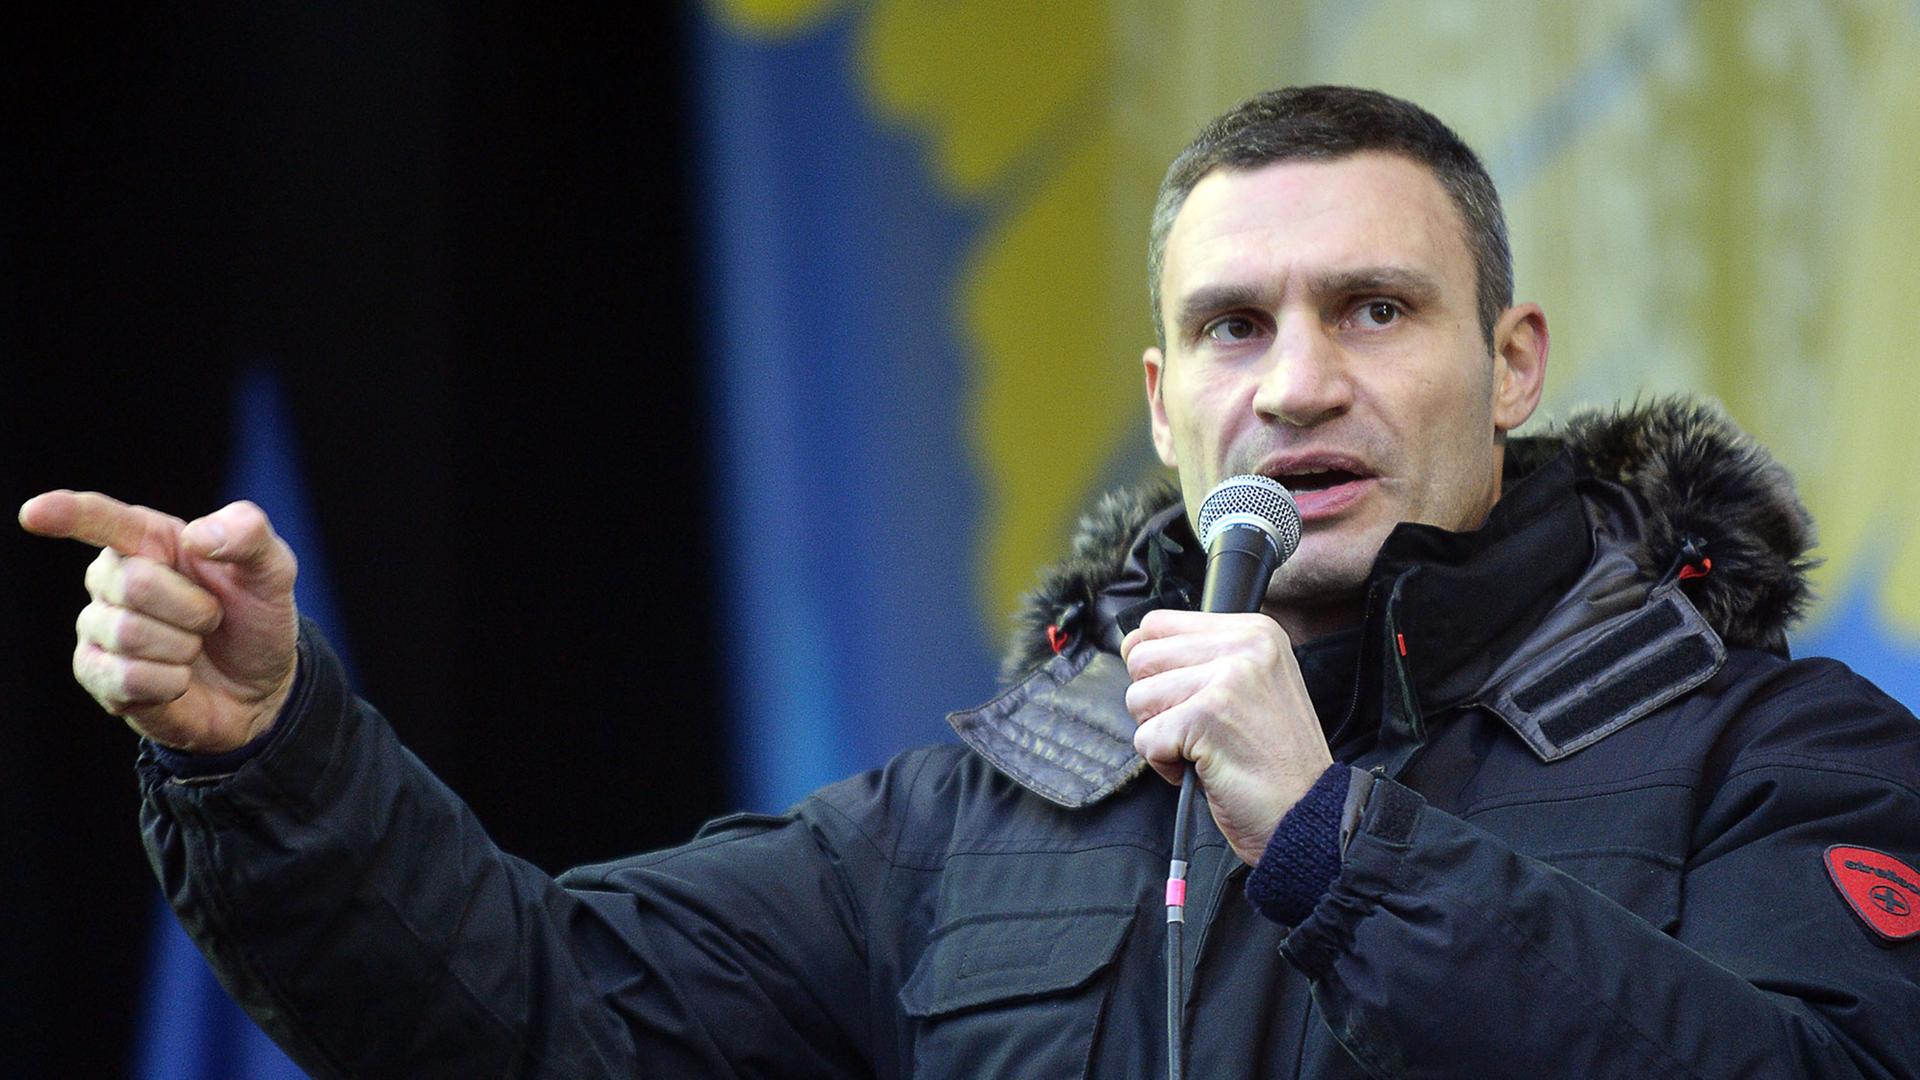 Der Chef der Oppositionspartei Udar, Vitali Klitschko, redet am 8.12.2013 bei einer Protestkundgebung in Kiew